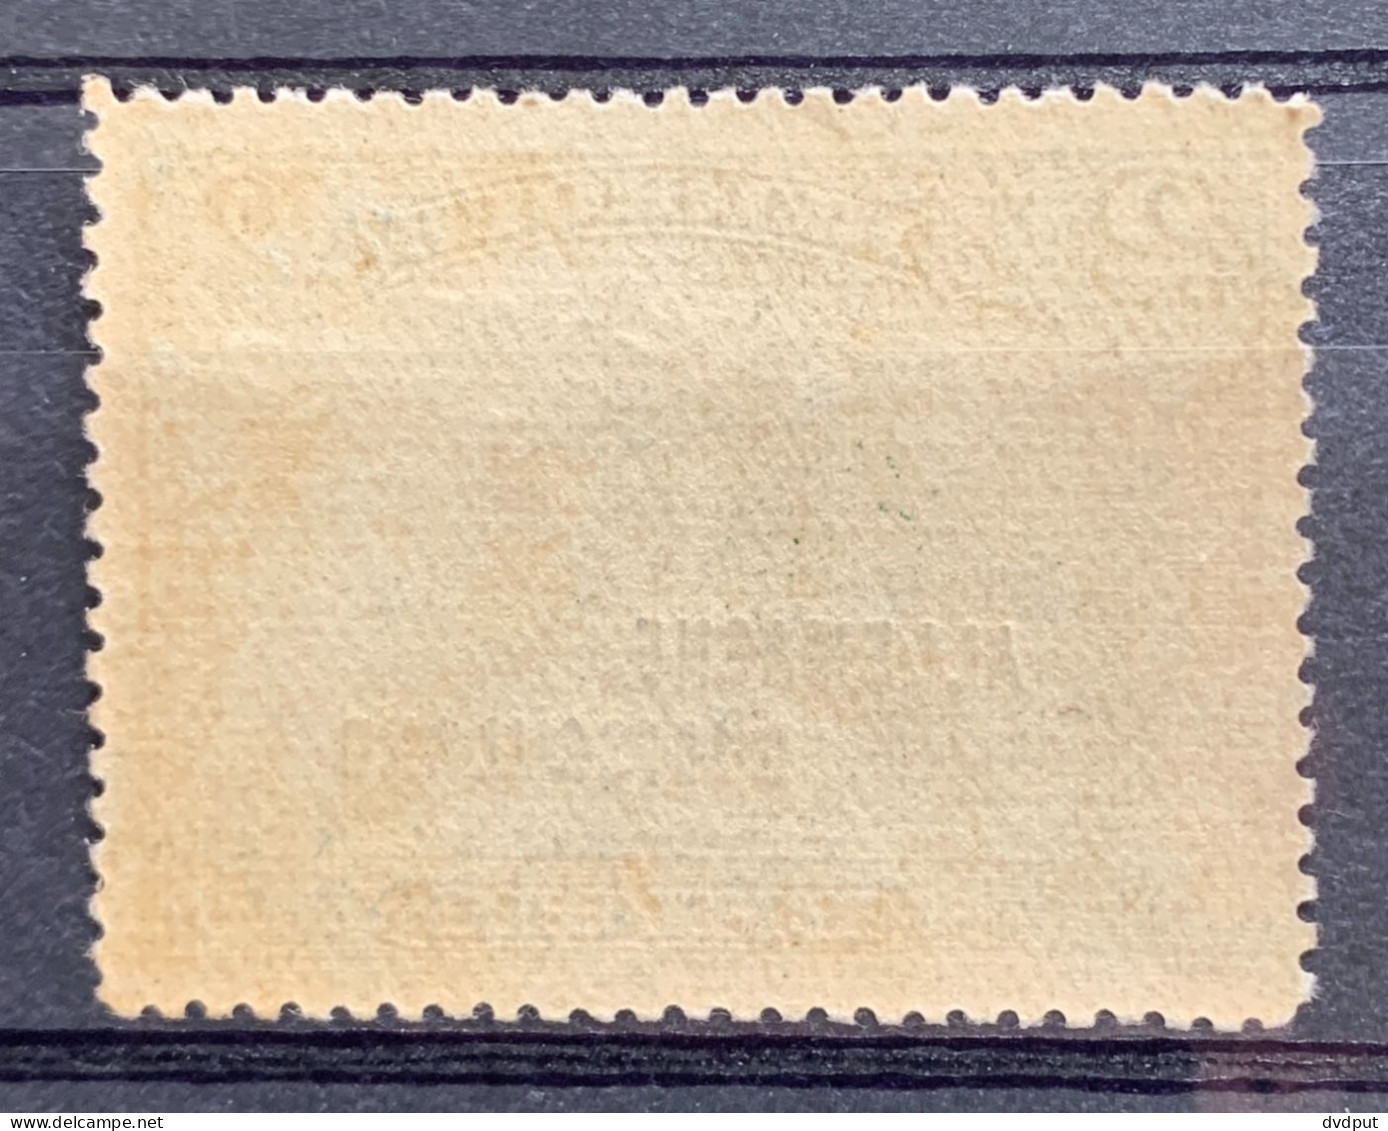 België, 1919, OC52, Zo Goed Als Postfris (licht Verkleurde Gom), OBP 83€ - OC38/54 Belgische Besetzung In Deutschland